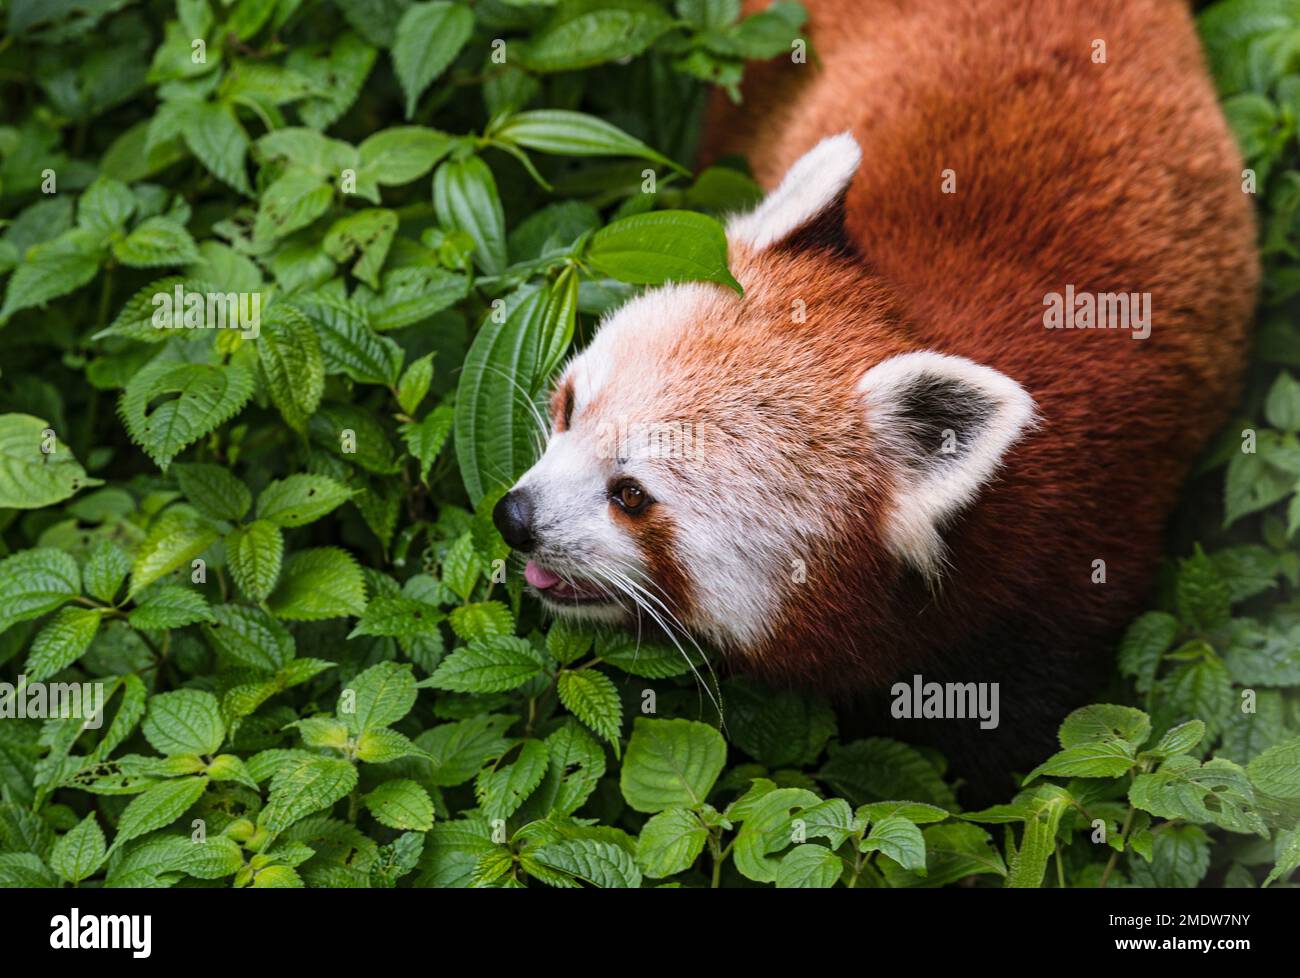 Der Rote Panda (Ailurus fulgens), auch bekannt als der kleinere Panda, ist ein gefährdetes Kleinsäugetier auf der IUCN-Liste, das im östlichen Himalaya und im Südwesten Chinas heimisch ist. Ein Panda spaziert durch Indiens größten Höhenzoo (7.000 Fuß) Padmaja Naidu Himalayan Zoological Park (PNHZP) in Darjeeling, Westbengalen, Indien. Stockfoto